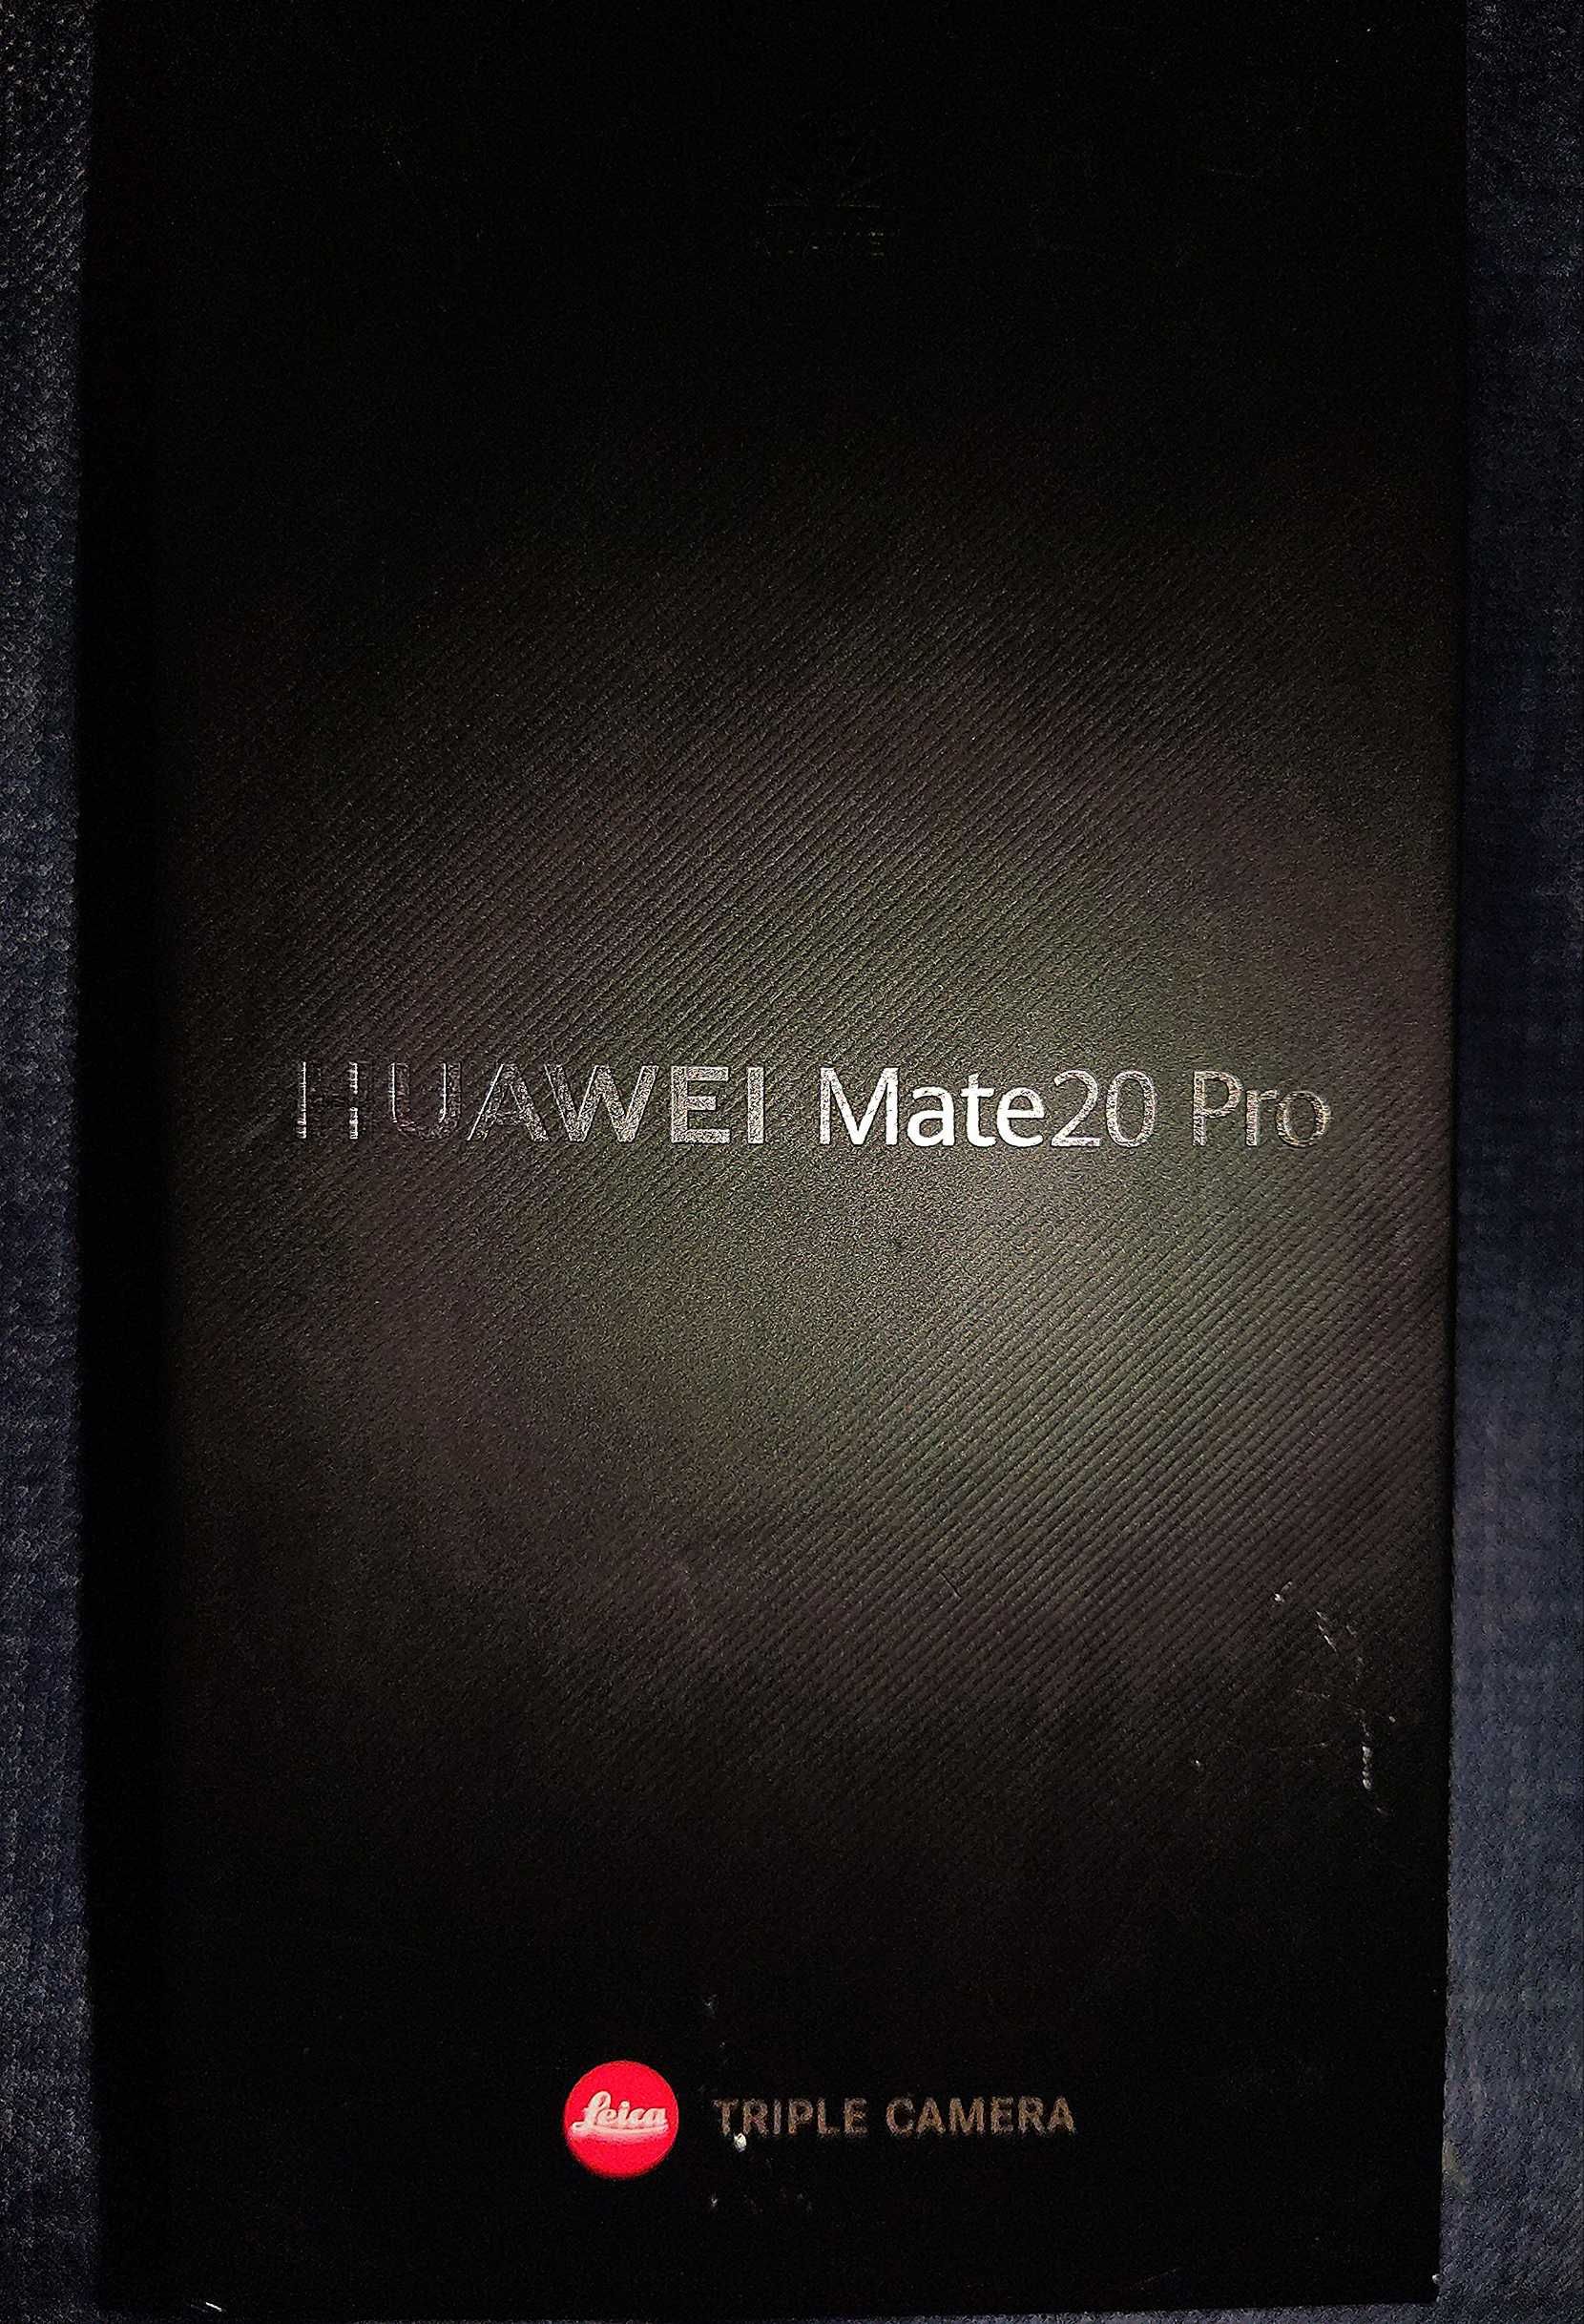 Huawei Mate 20 Pro ecrã 2K